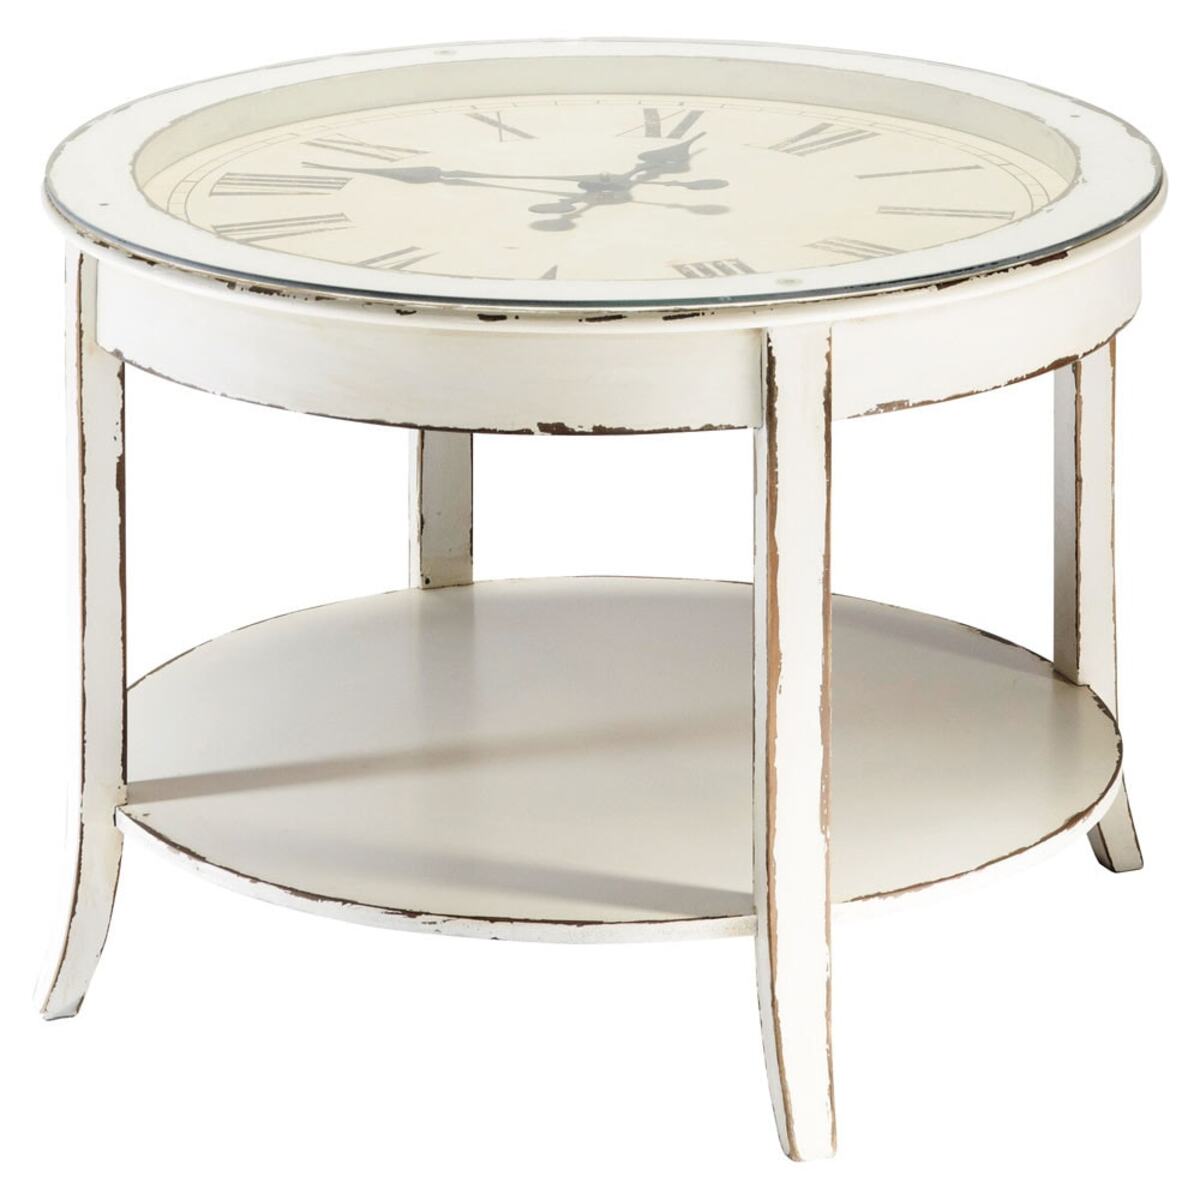 Table basse ronde horloge en verre et bois blanc vieilli D 72 cm Teatime